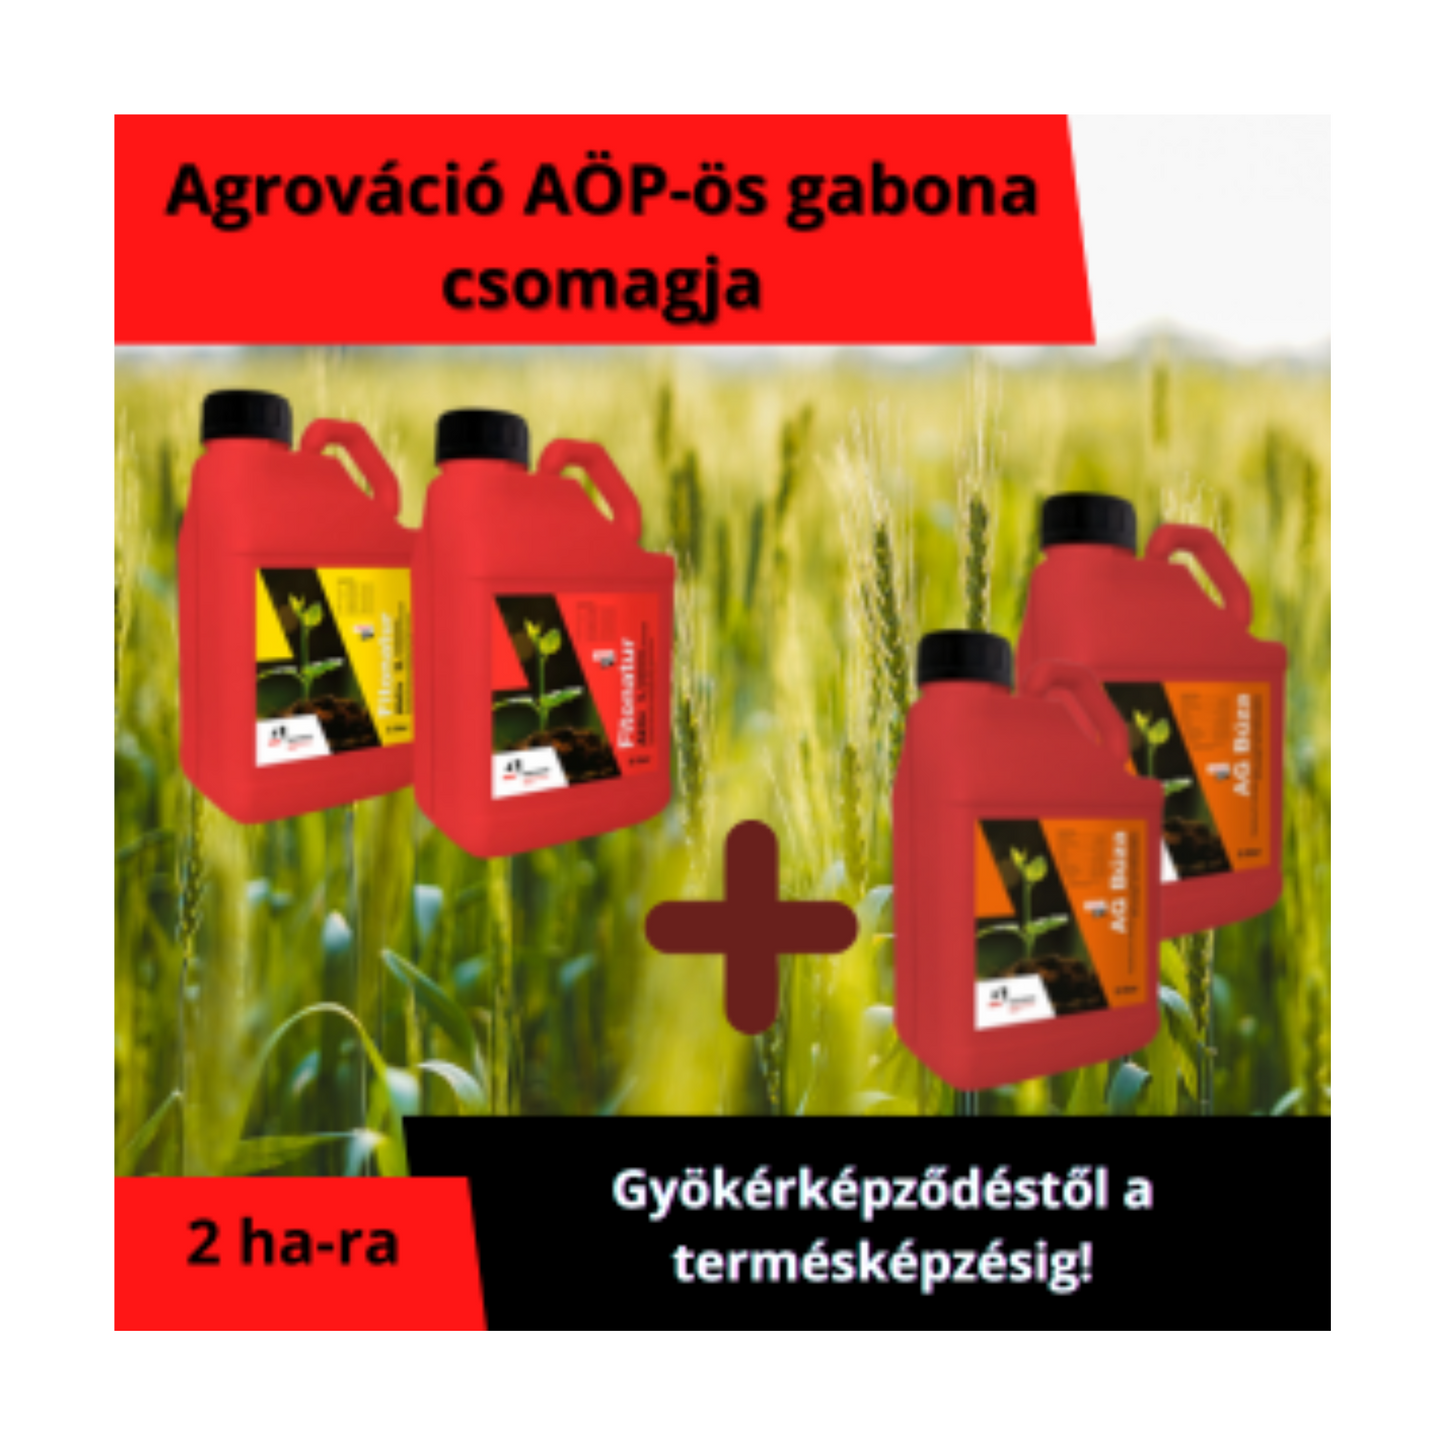 AG AÖP-ös Gabona csomag - természetes hatóanyagú növénykondicionáló készítmény és levéltrágya a kalászokért